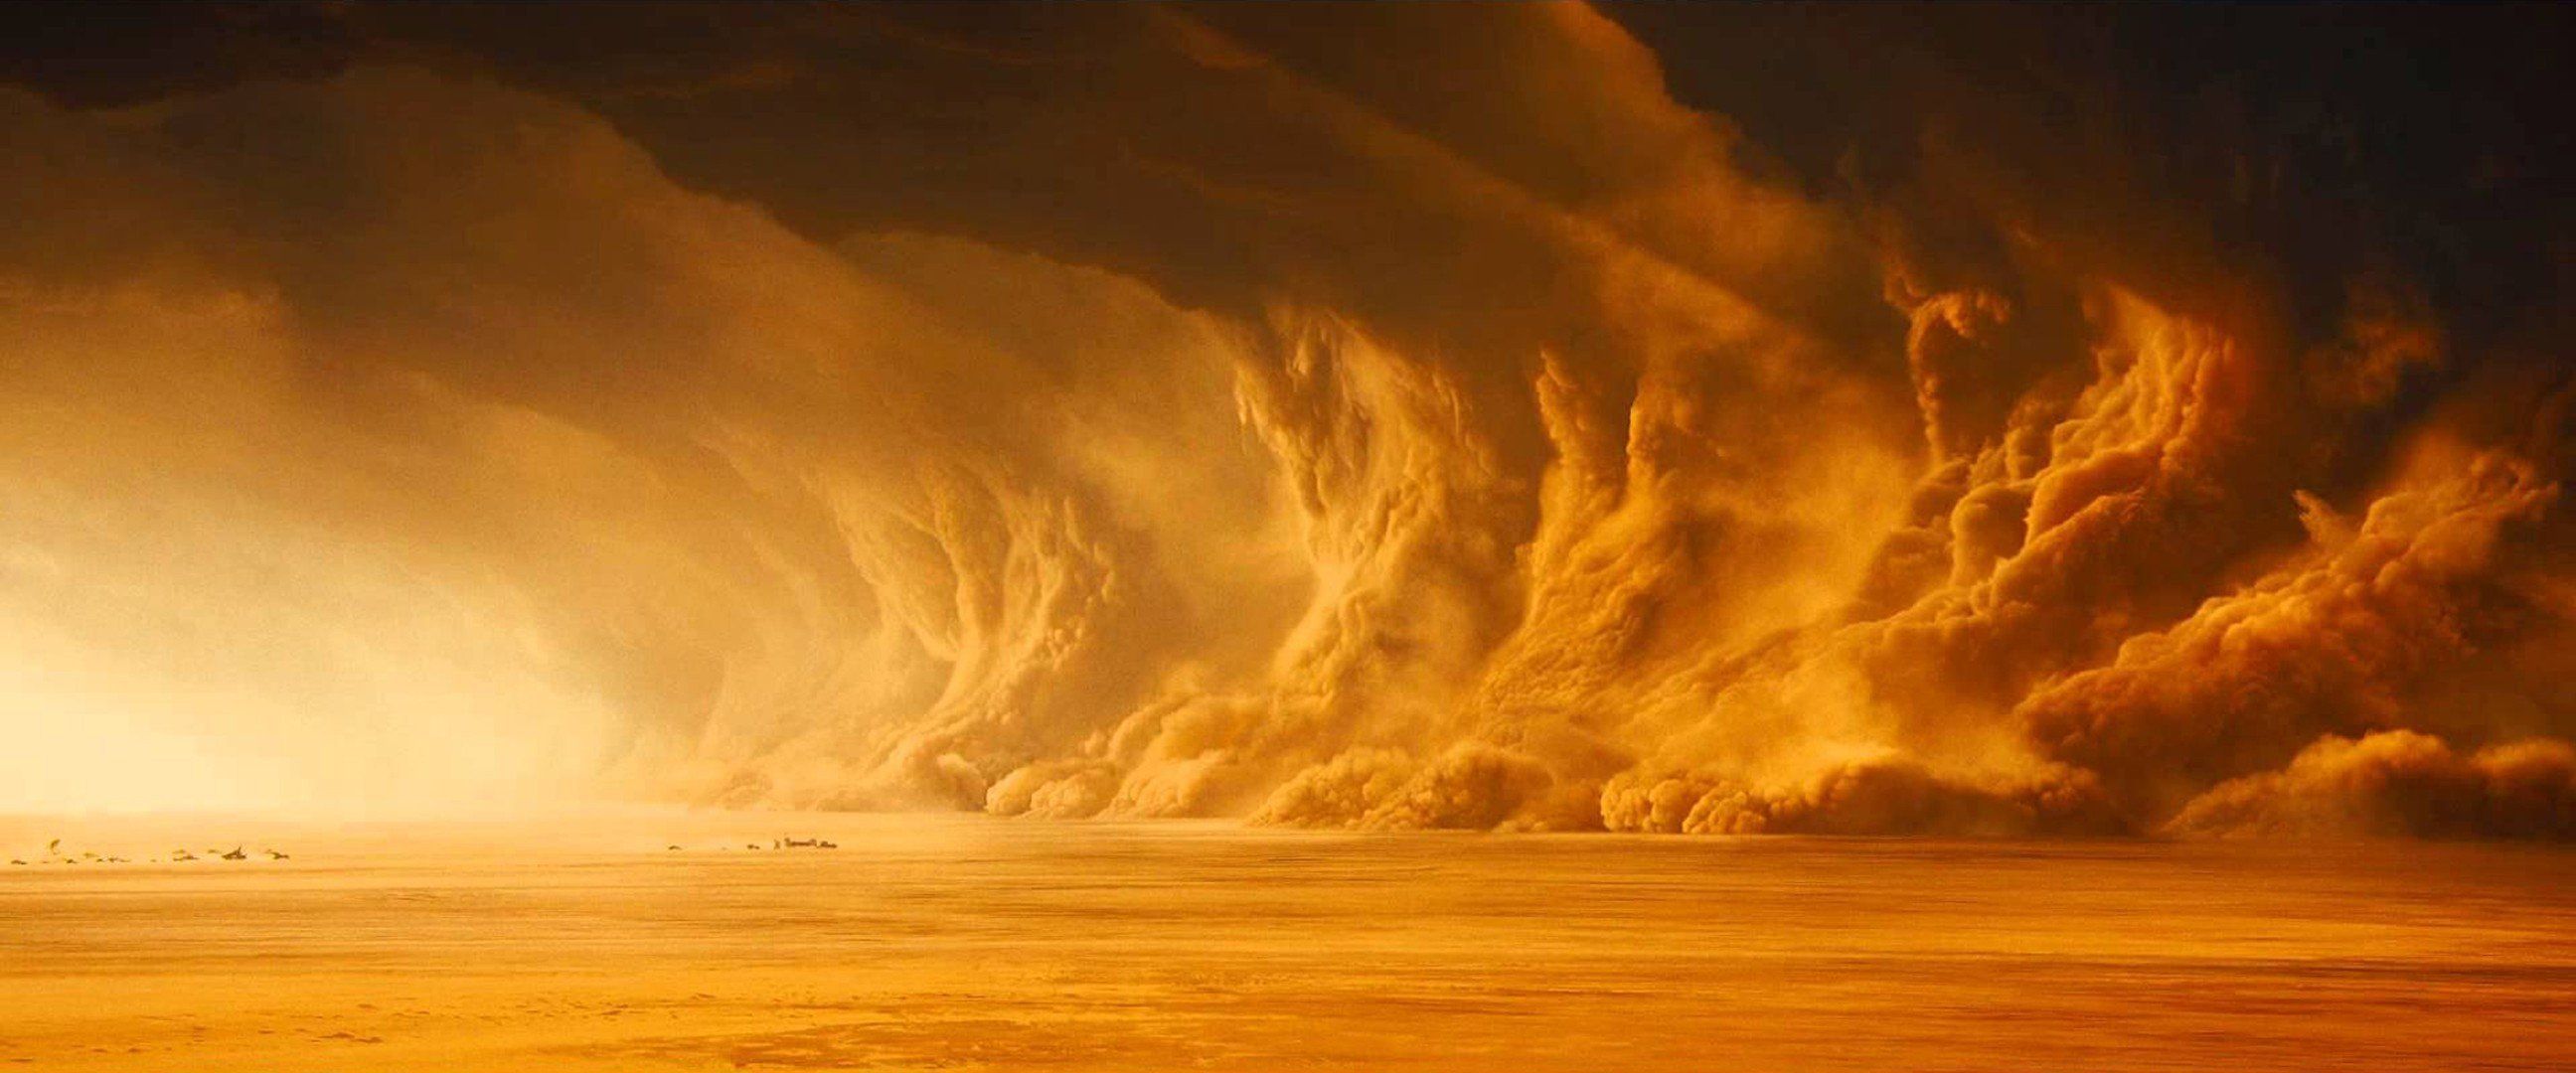 Sandstorm Wallpaper